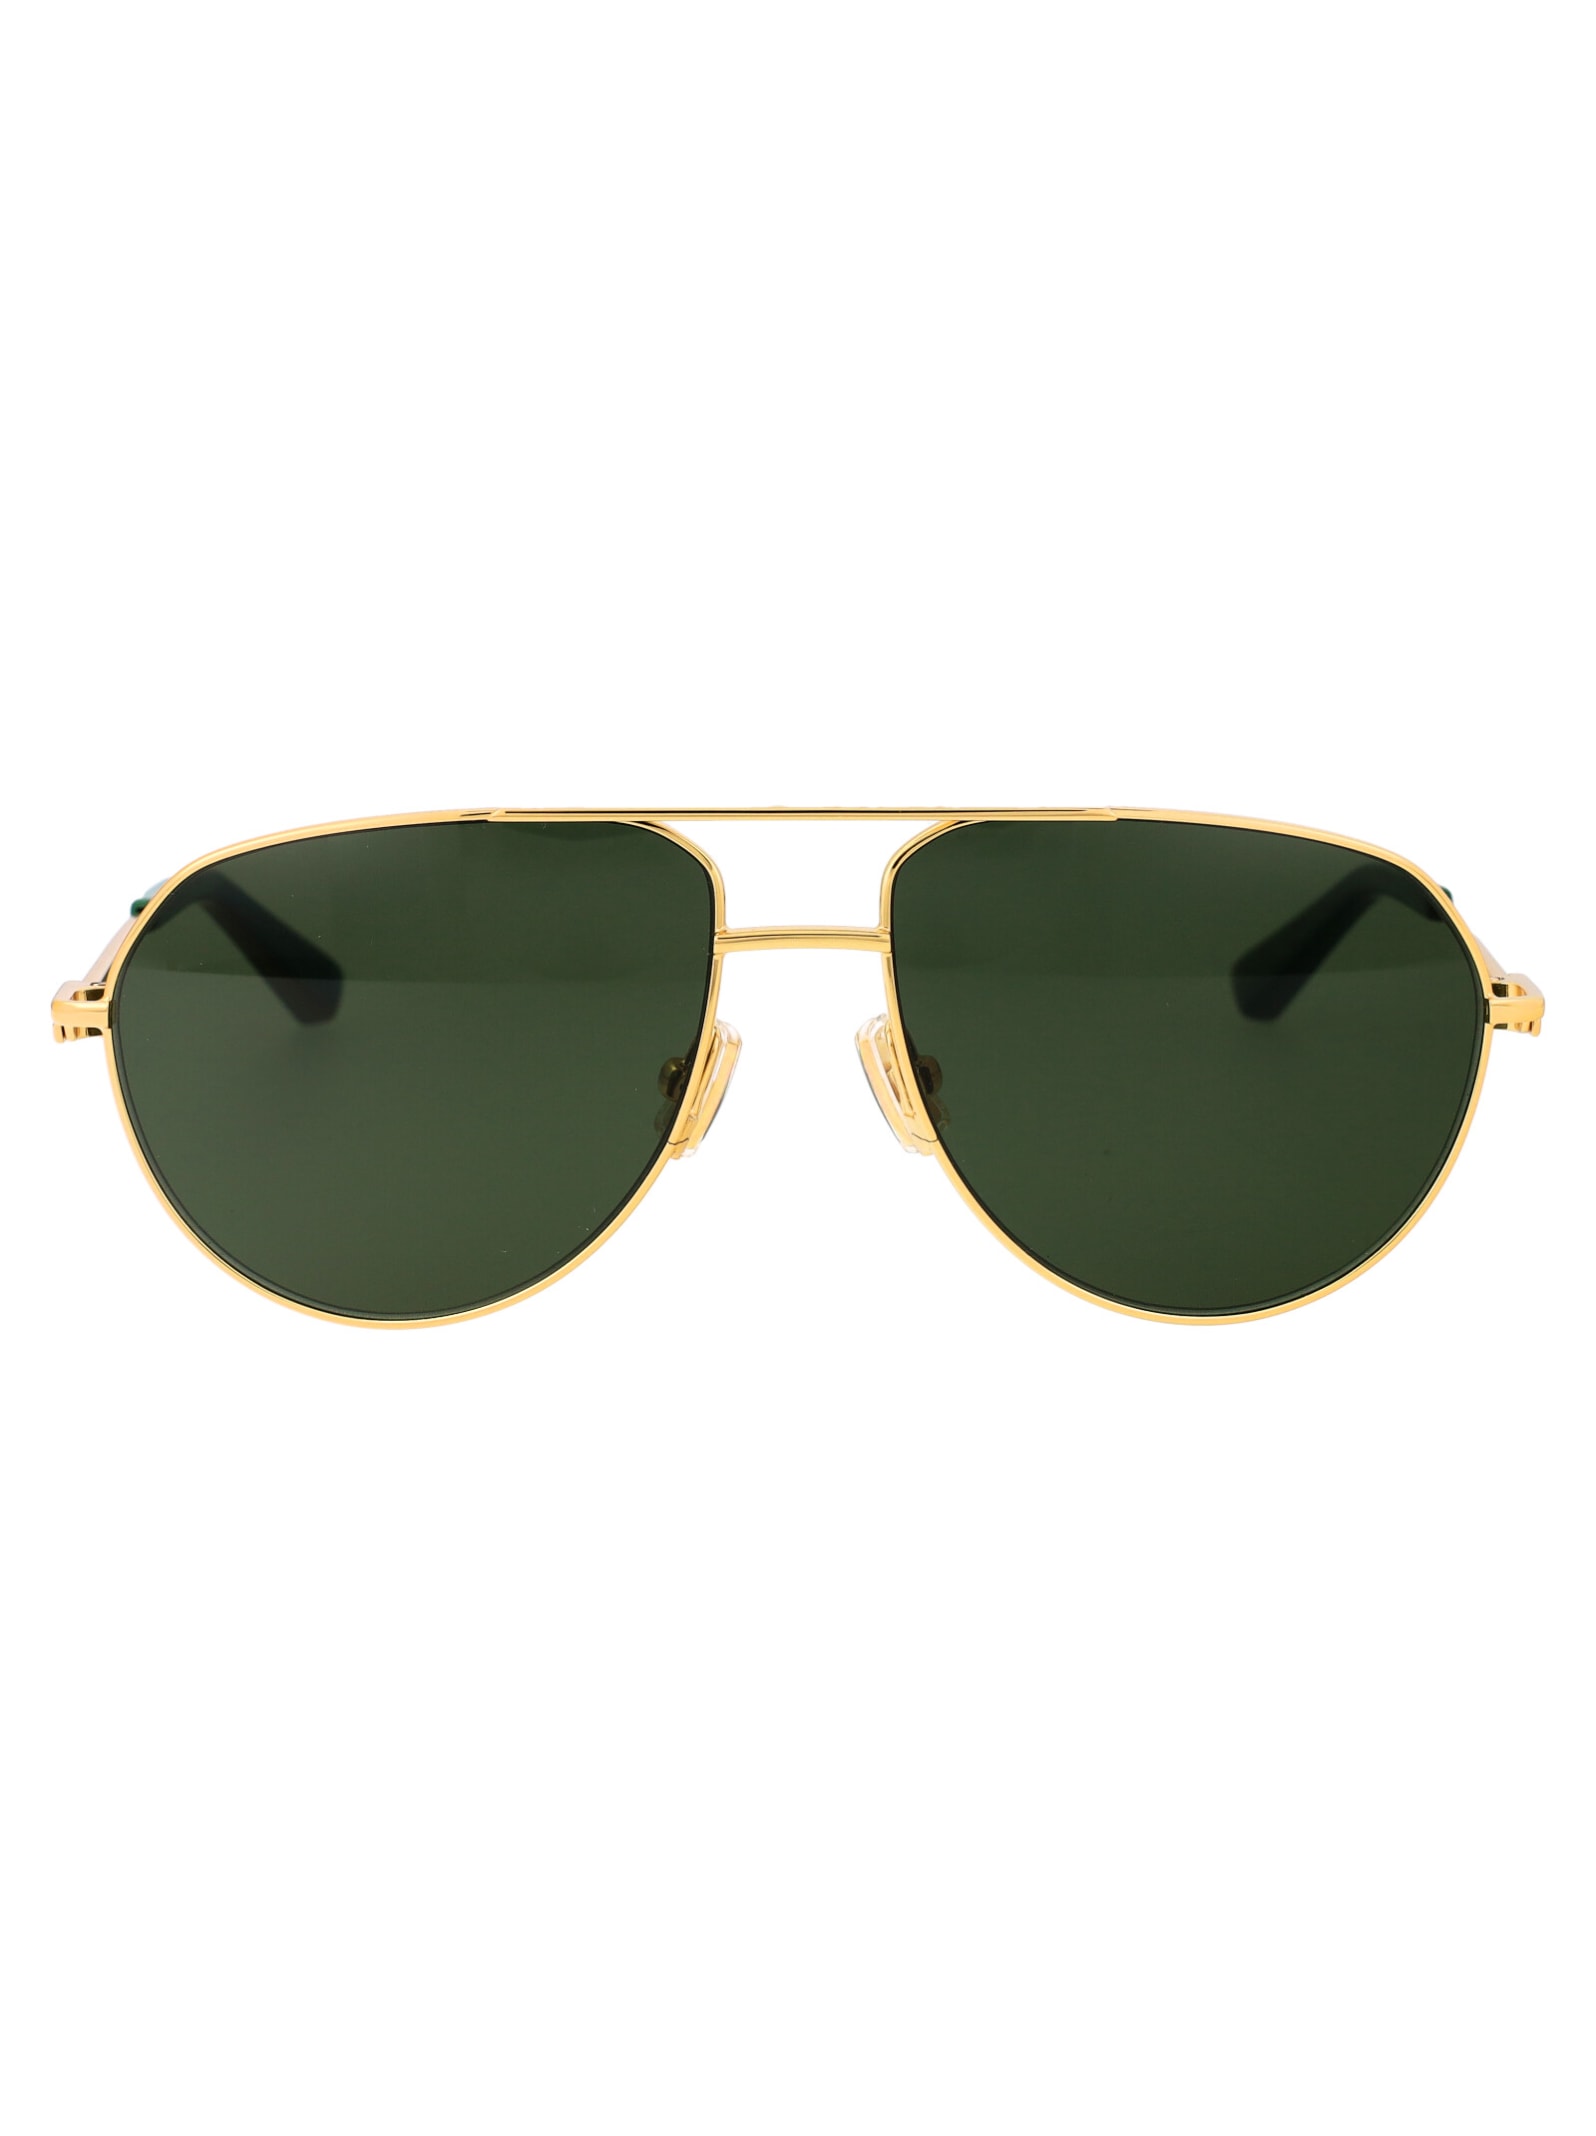 Bv1302s Sunglasses